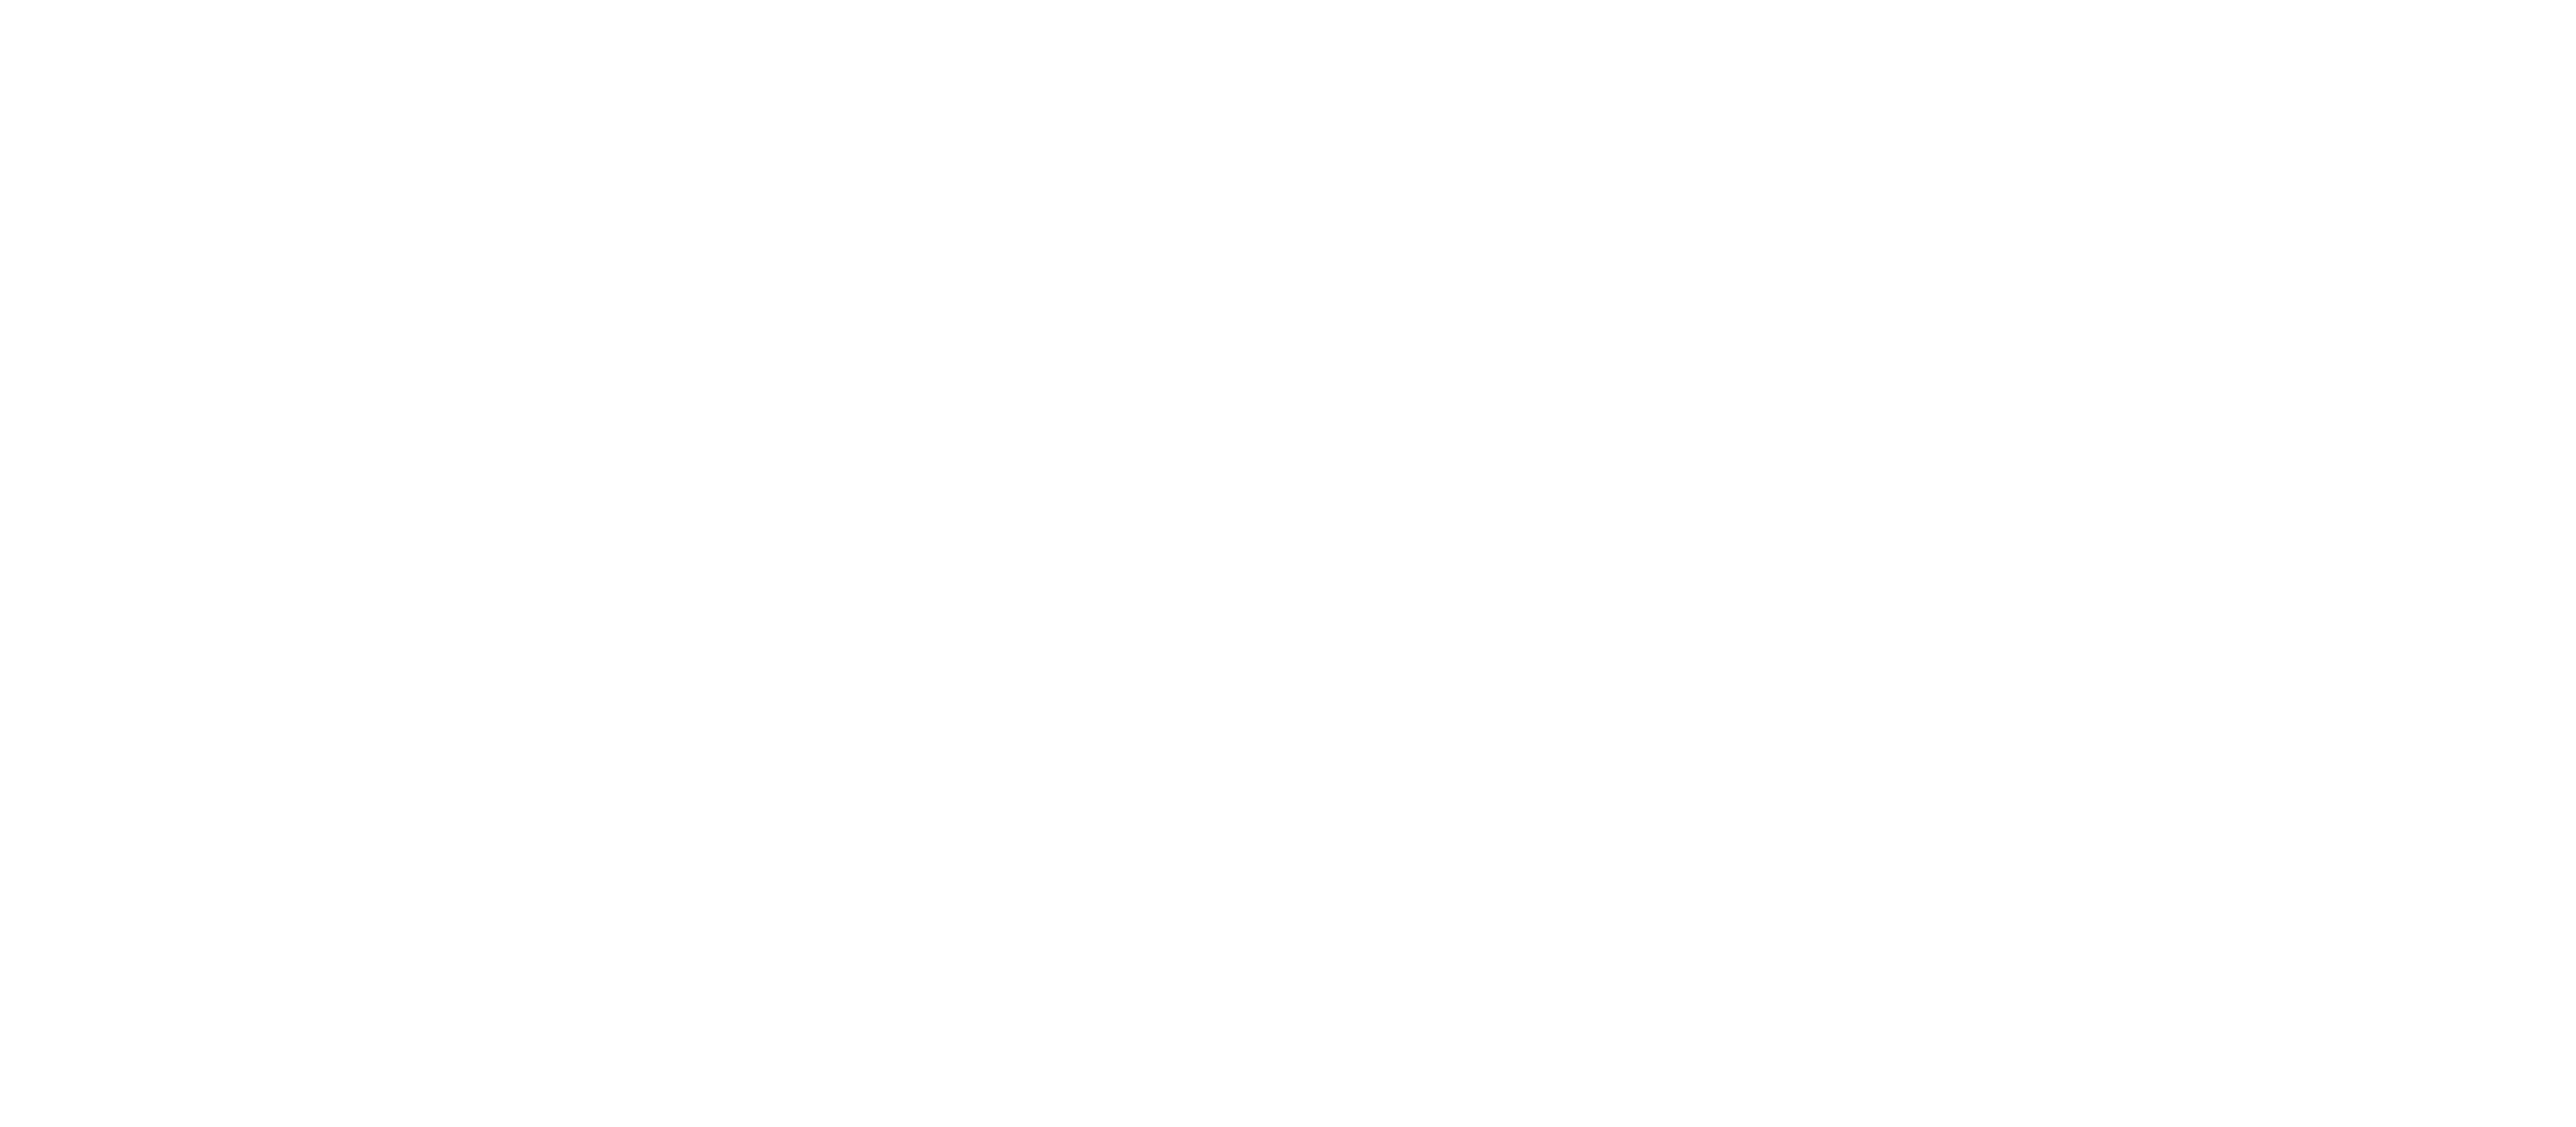 Hofmann Haus GmbH logo